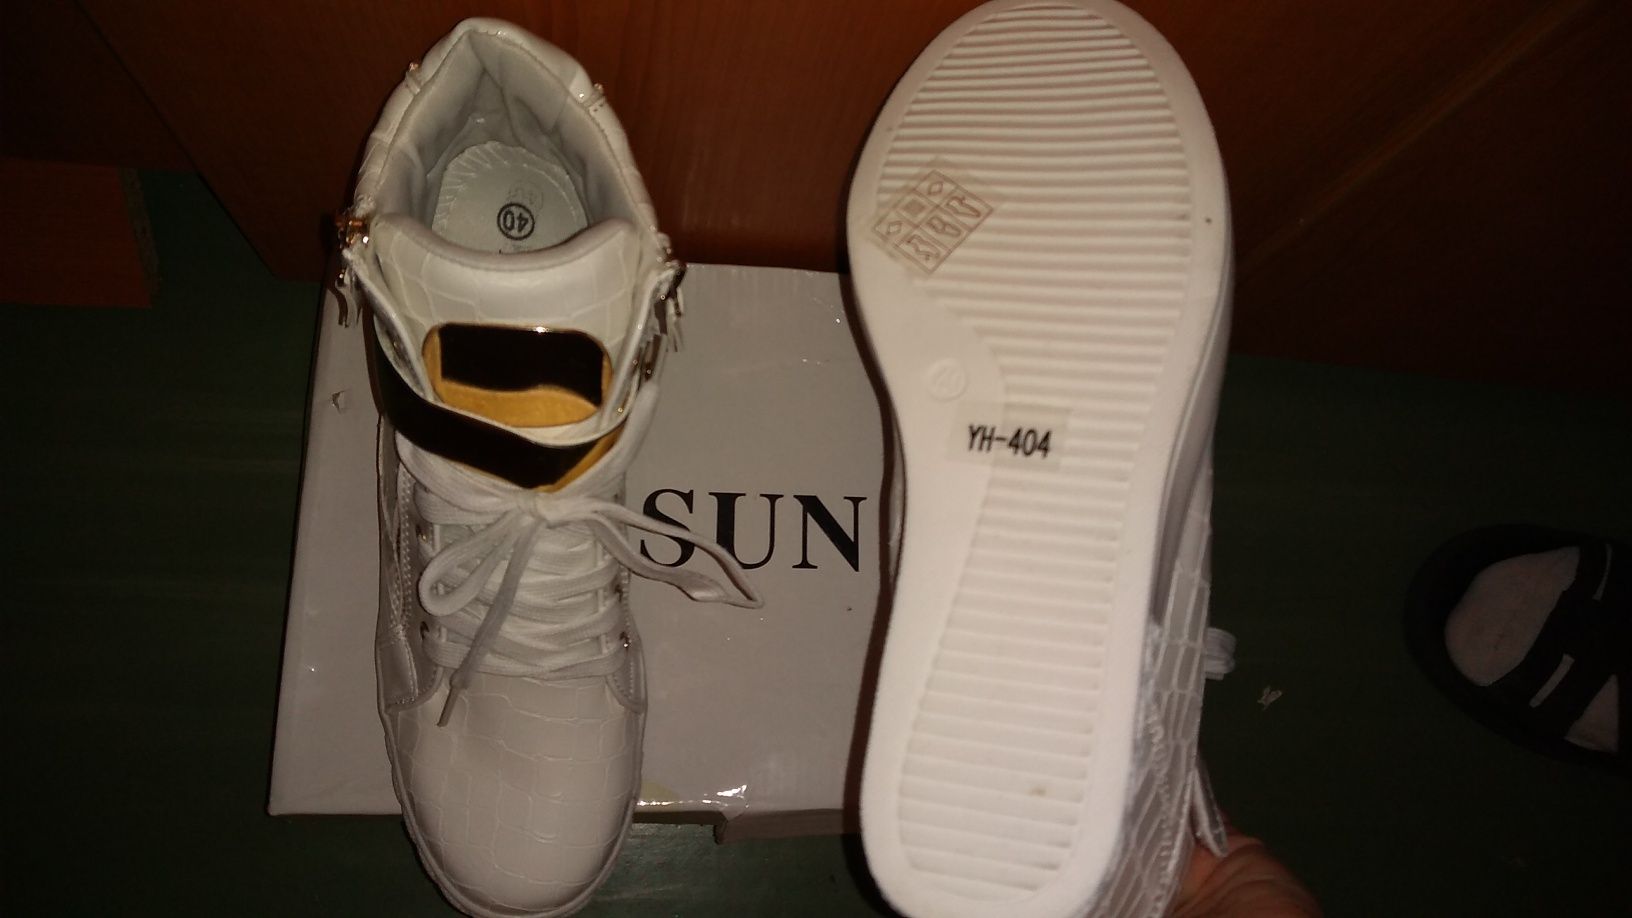 Sneakers/ Adidas Gheata cu platforme DESUN , albi cu insertii aurii